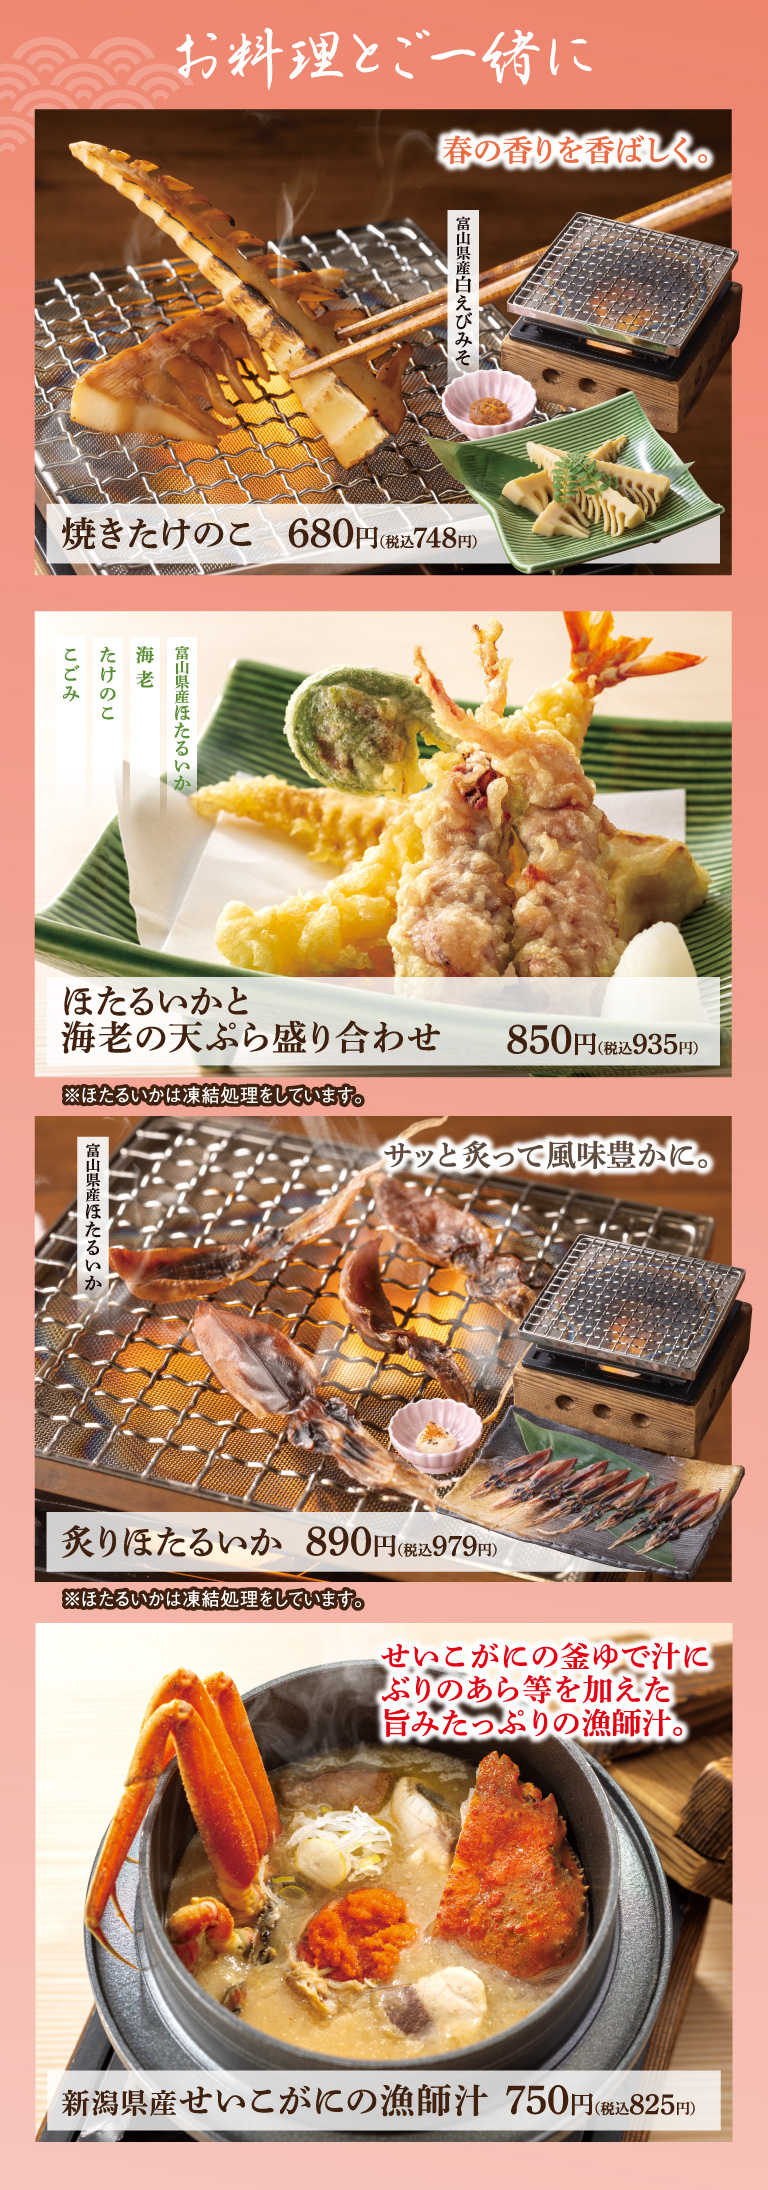 요리와 함께 구운 다케노코 호타루이카와 새우의 튀김 모듬 볶은 호타루이카